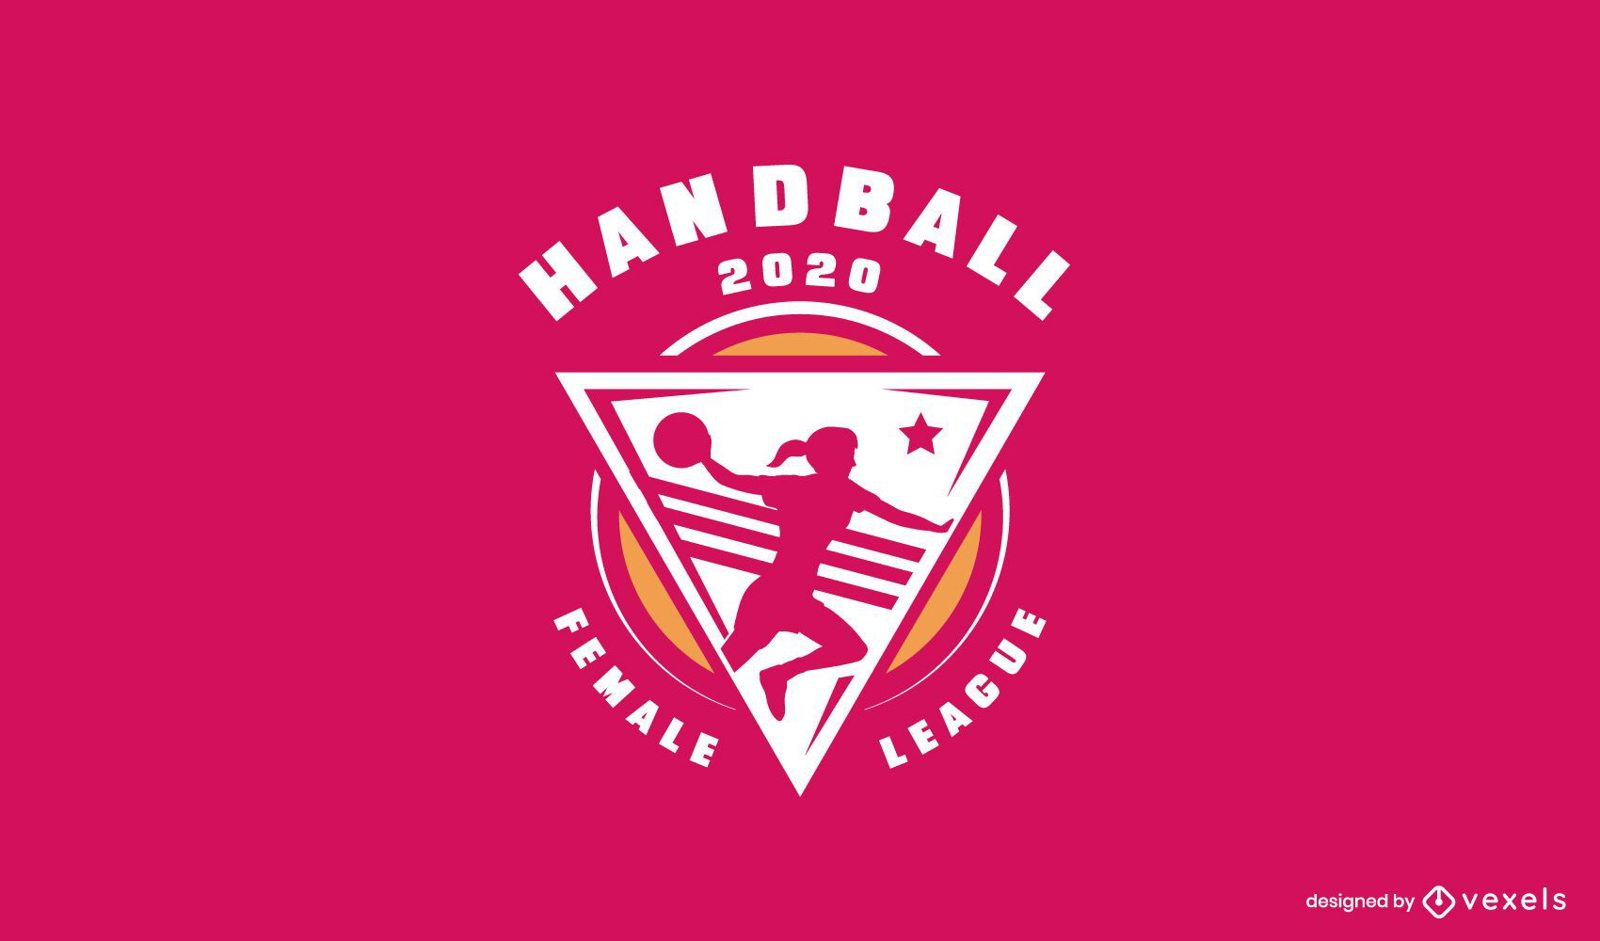 Modelo de logotipo da liga feminina de handebol